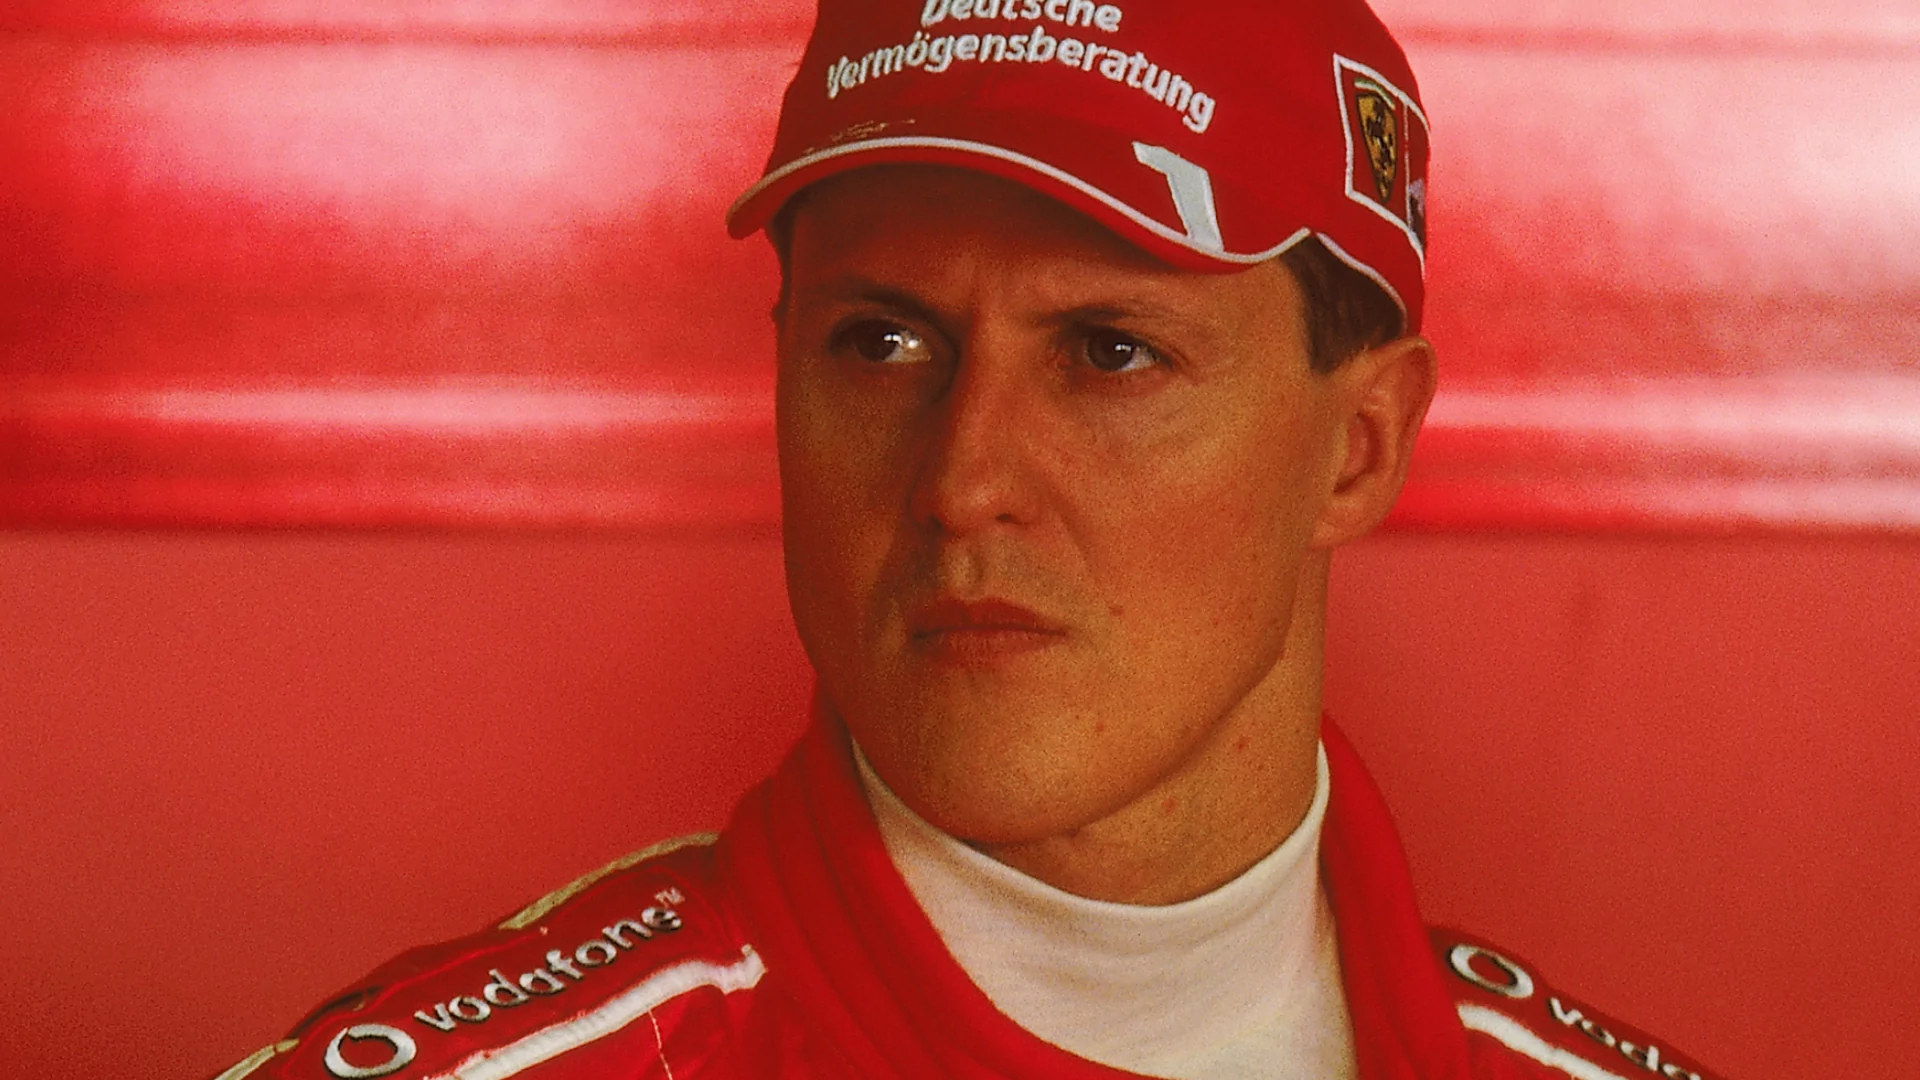 Revista alemã é condenada a pagar R$ 1 milhão por publicar entrevista de Schumacher gerada por IA